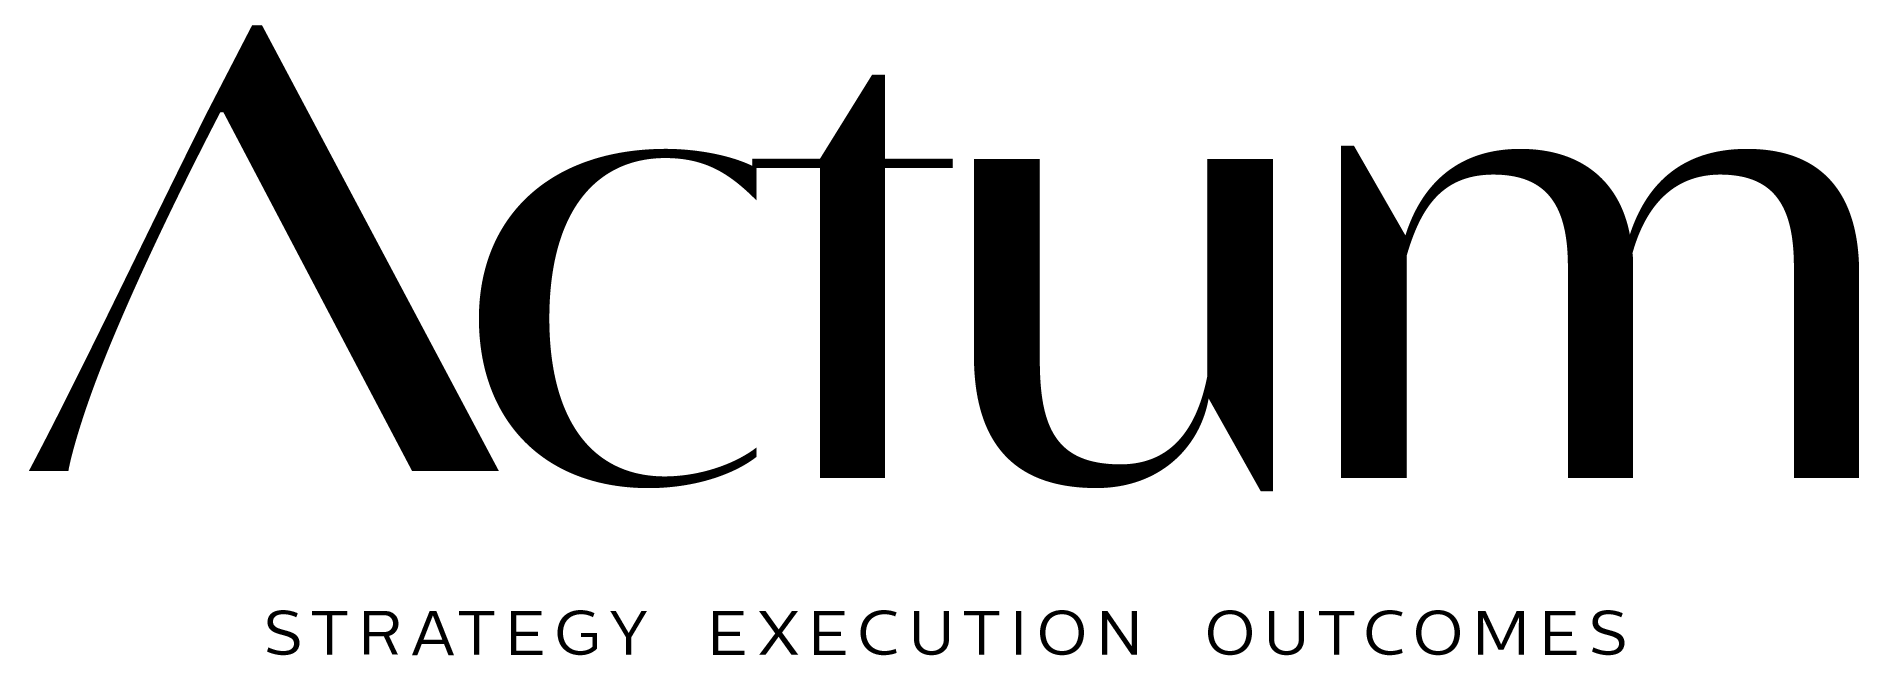 actum-logo-1-black.png